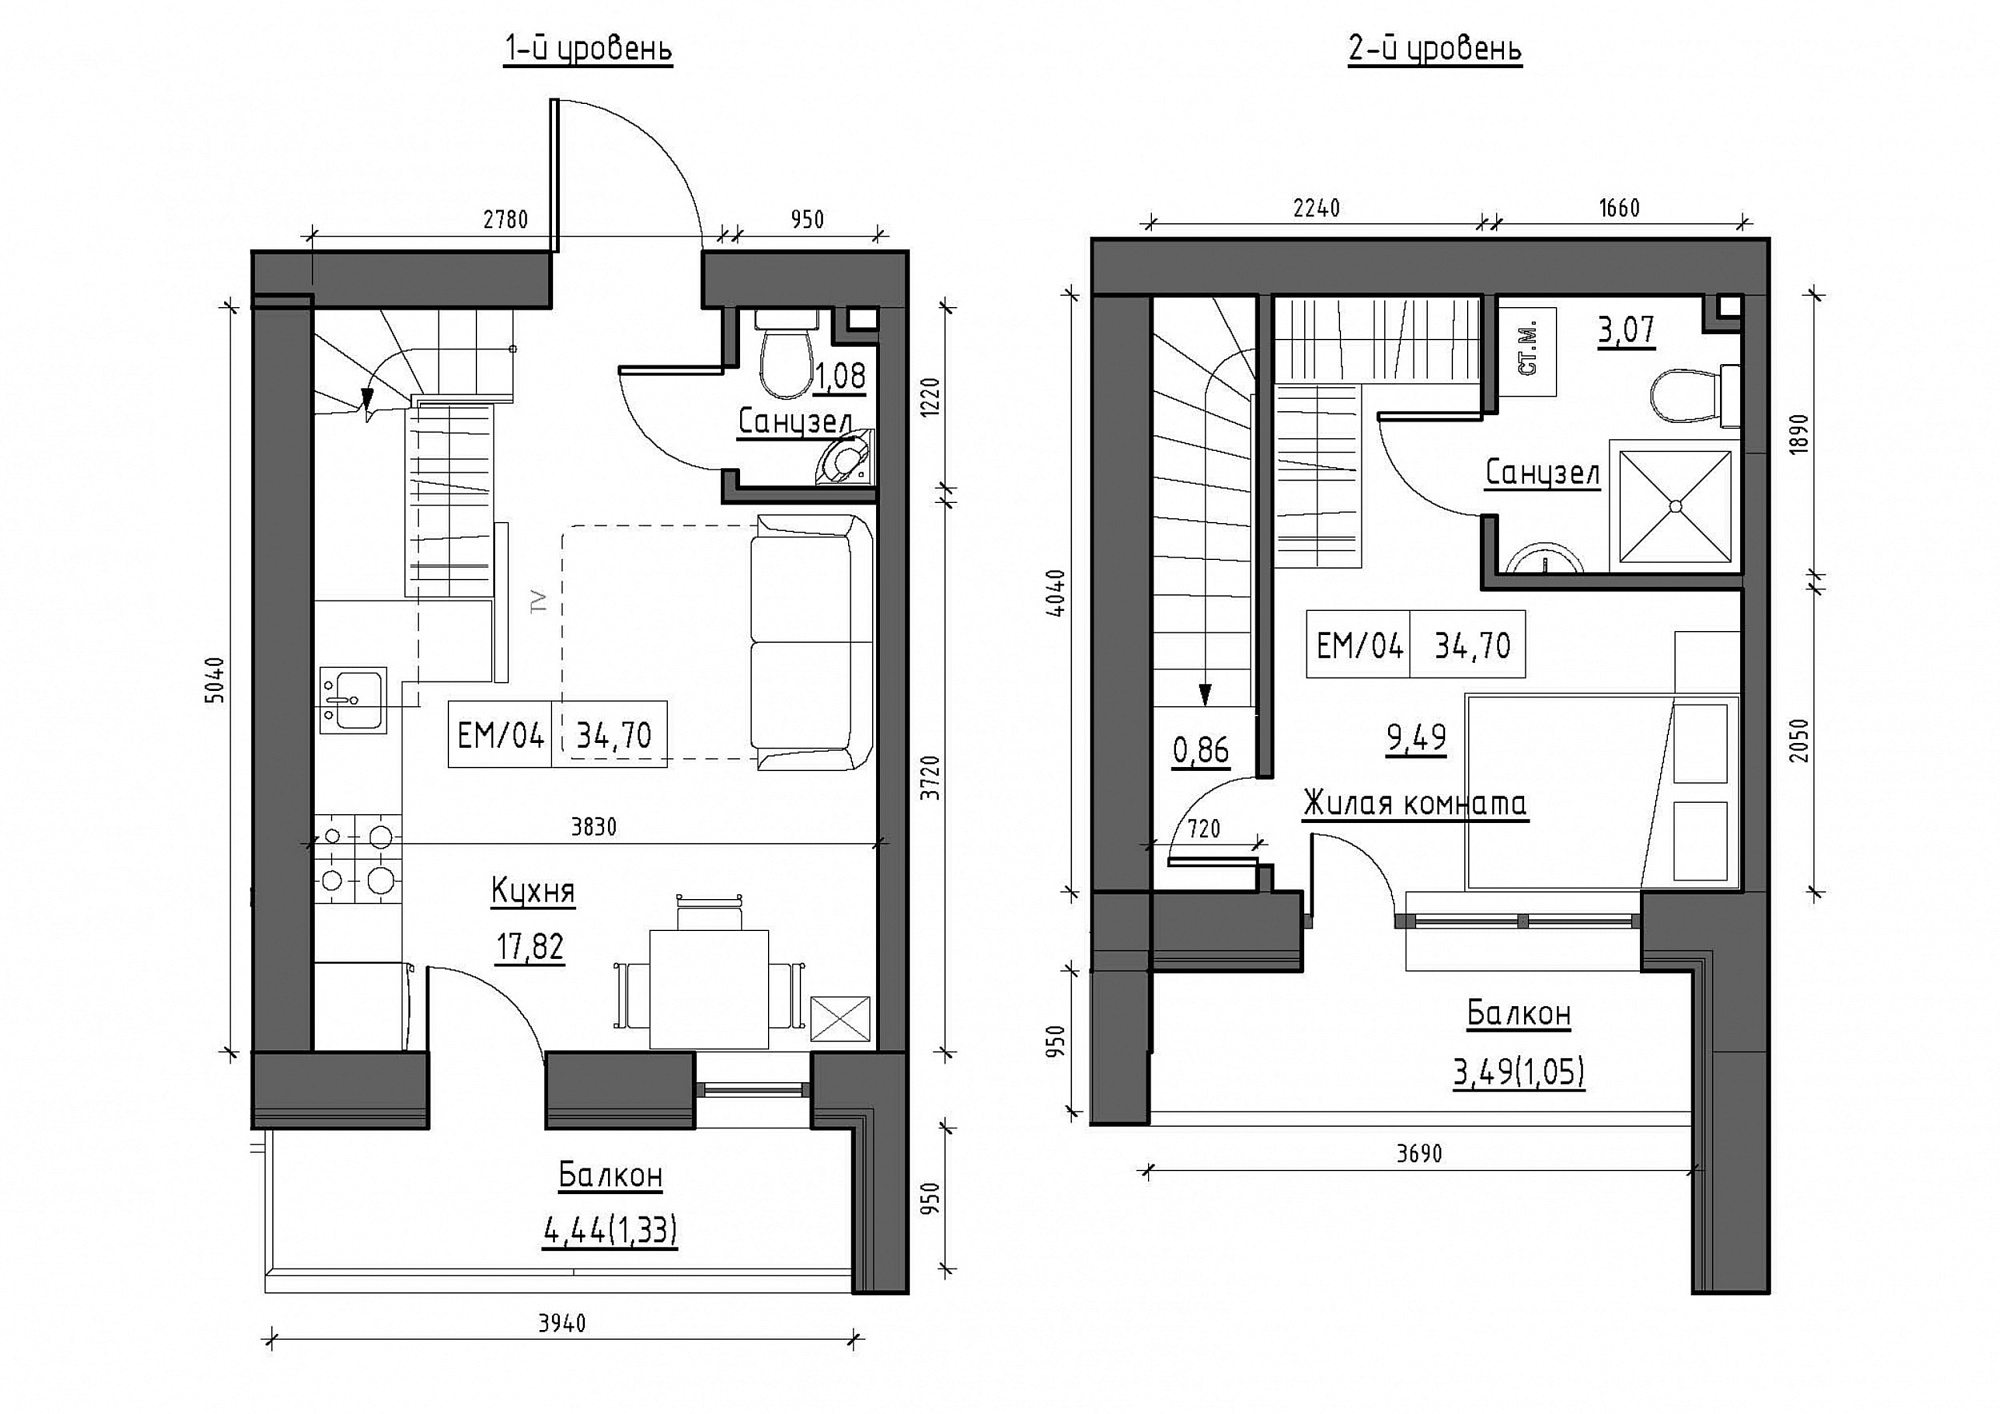 Planning 2-lvl flats area 34.7m2, KS-011-05/0014.